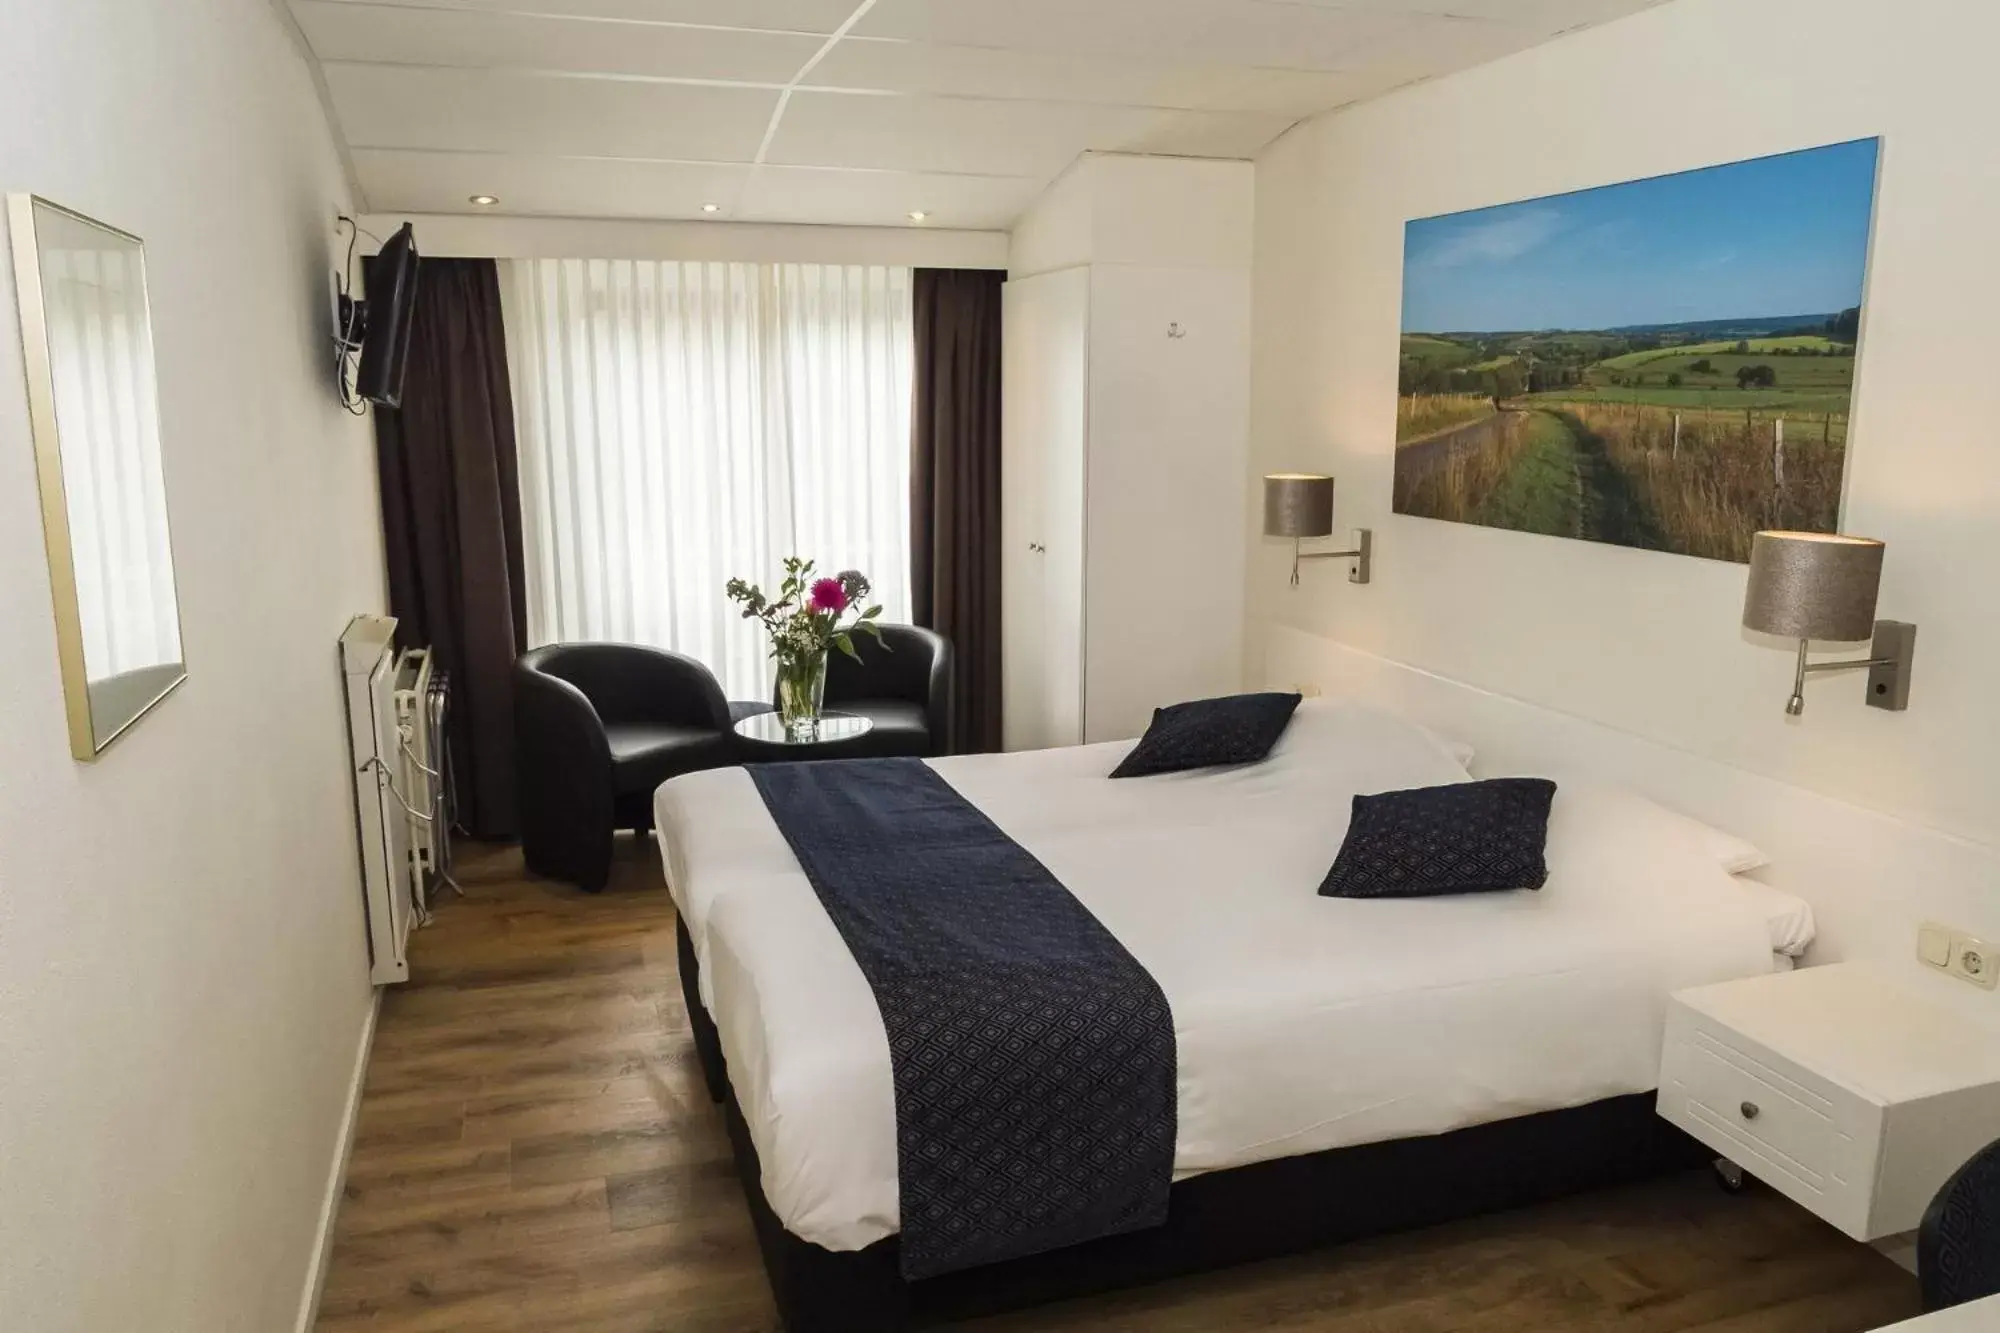 Bed in Best Western Hotel Slenaken